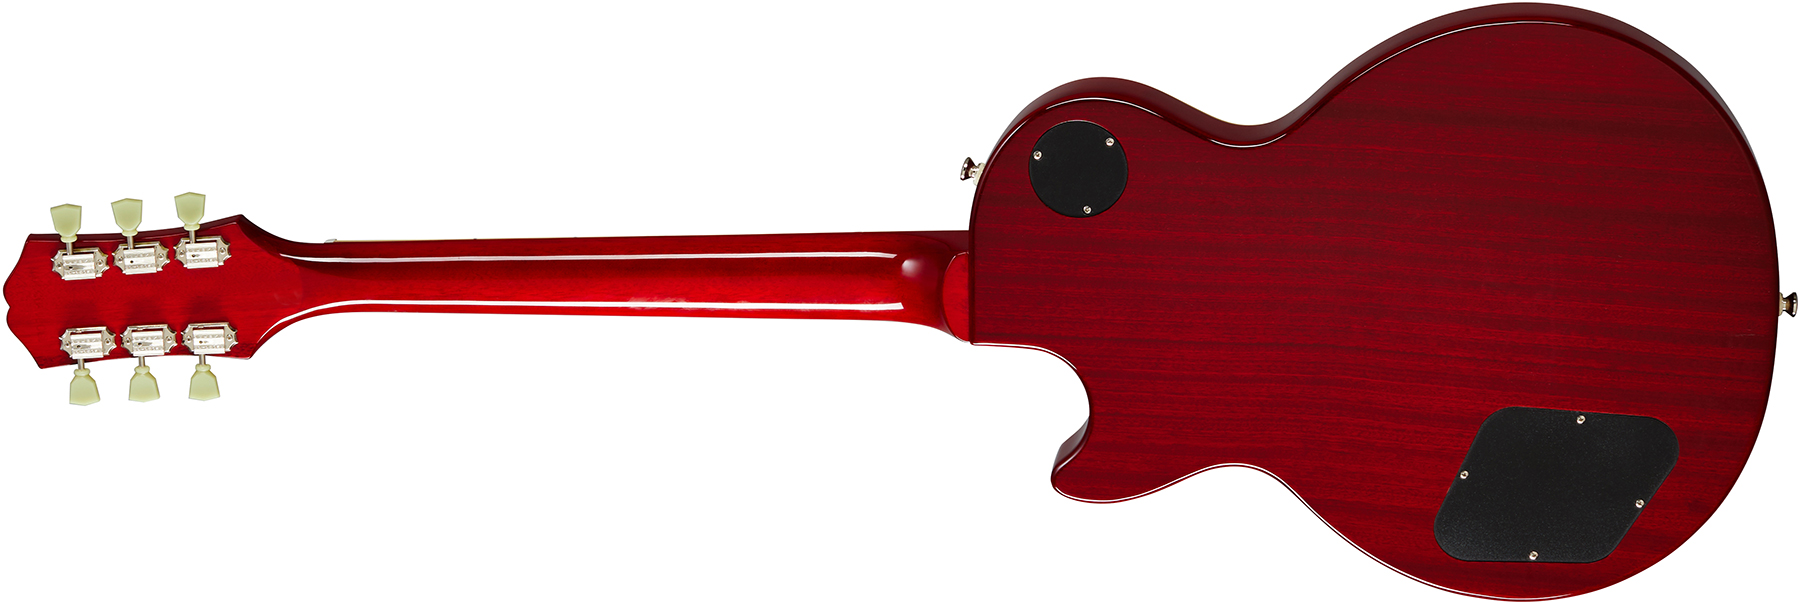 Epiphone Les Paul Standard 50s Lh Gaucher 2h Ht Rw - Vintage Sunburst - Linkshandige elektrische gitaar - Variation 1